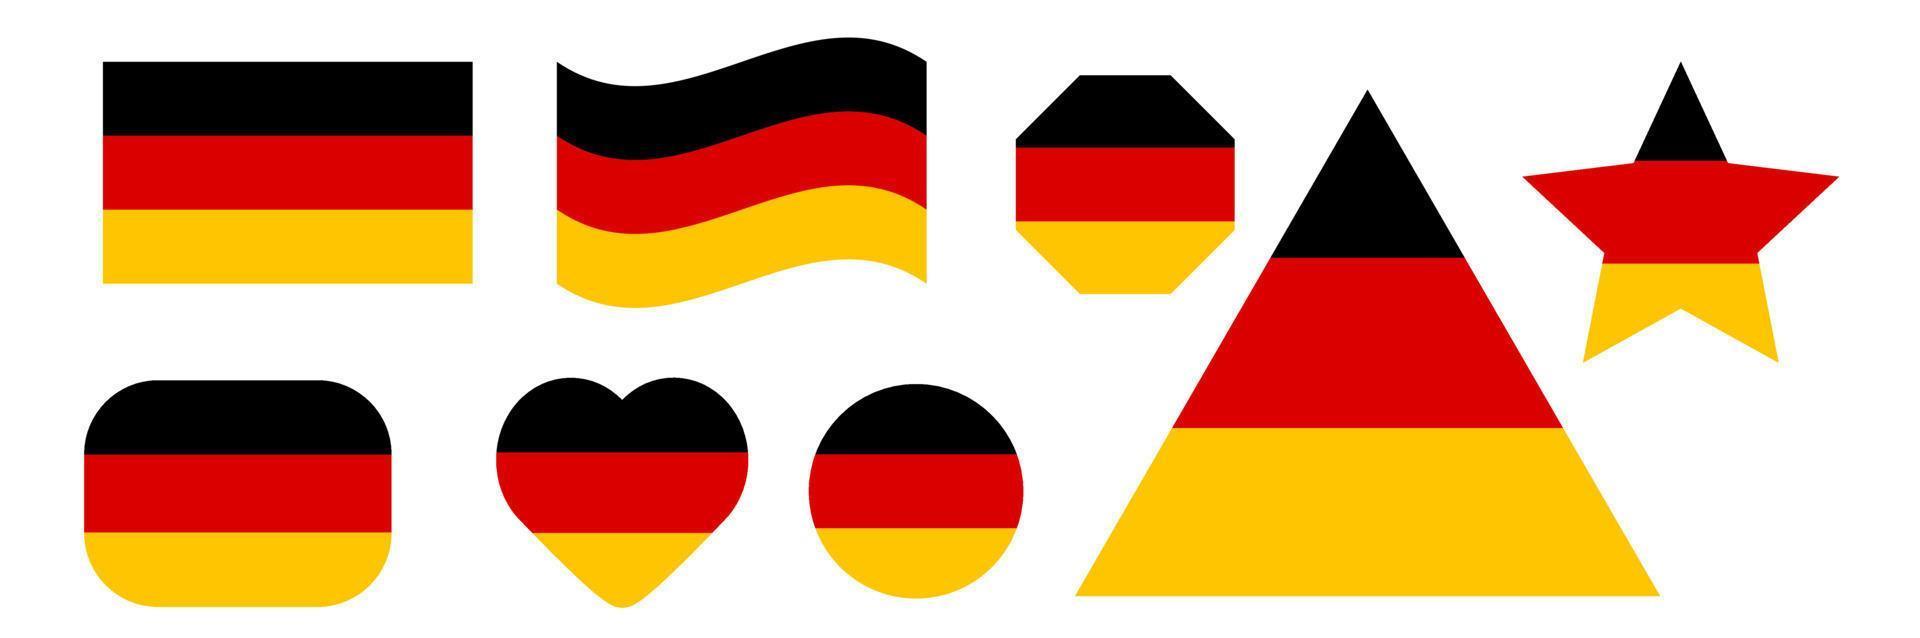 Duitsland vlag vectorillustratie. Duitsland nationale vlag instellen vectorillustratie. illustratie van de vlag van Duitsland. Duitsland officiële nationale vlag. vector